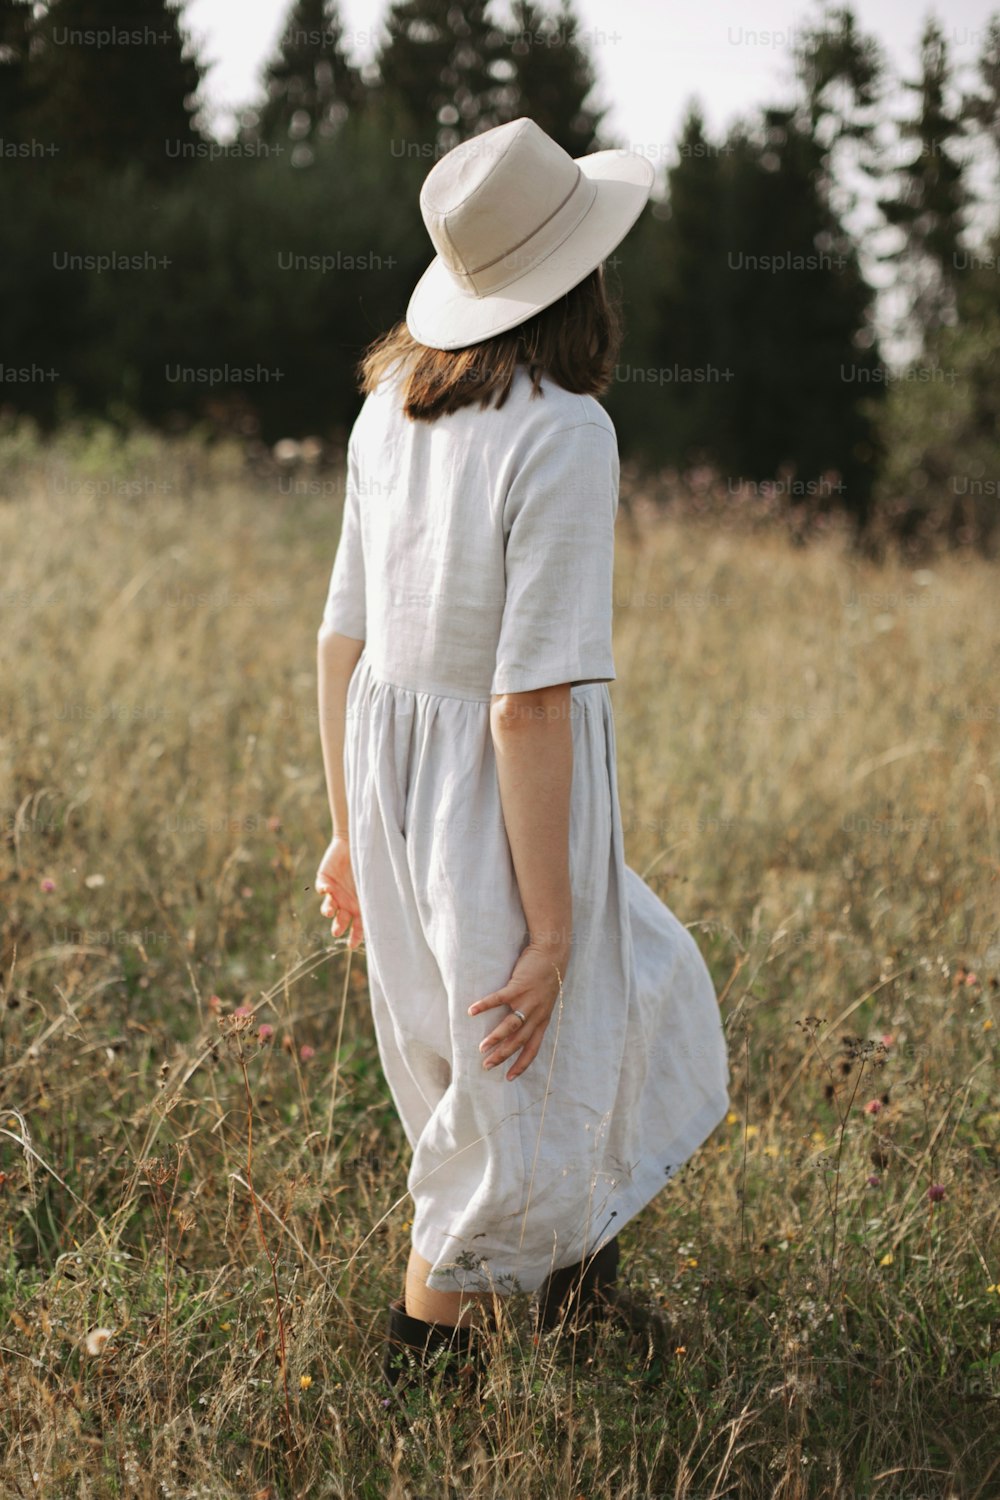 Fille élégante en robe de lin et chapeau marchant parmi les herbes et les fleurs sauvages, regardant le champ. Femme bohème se relaxant à la campagne, style de vie simple et lent.  Image atmosphérique